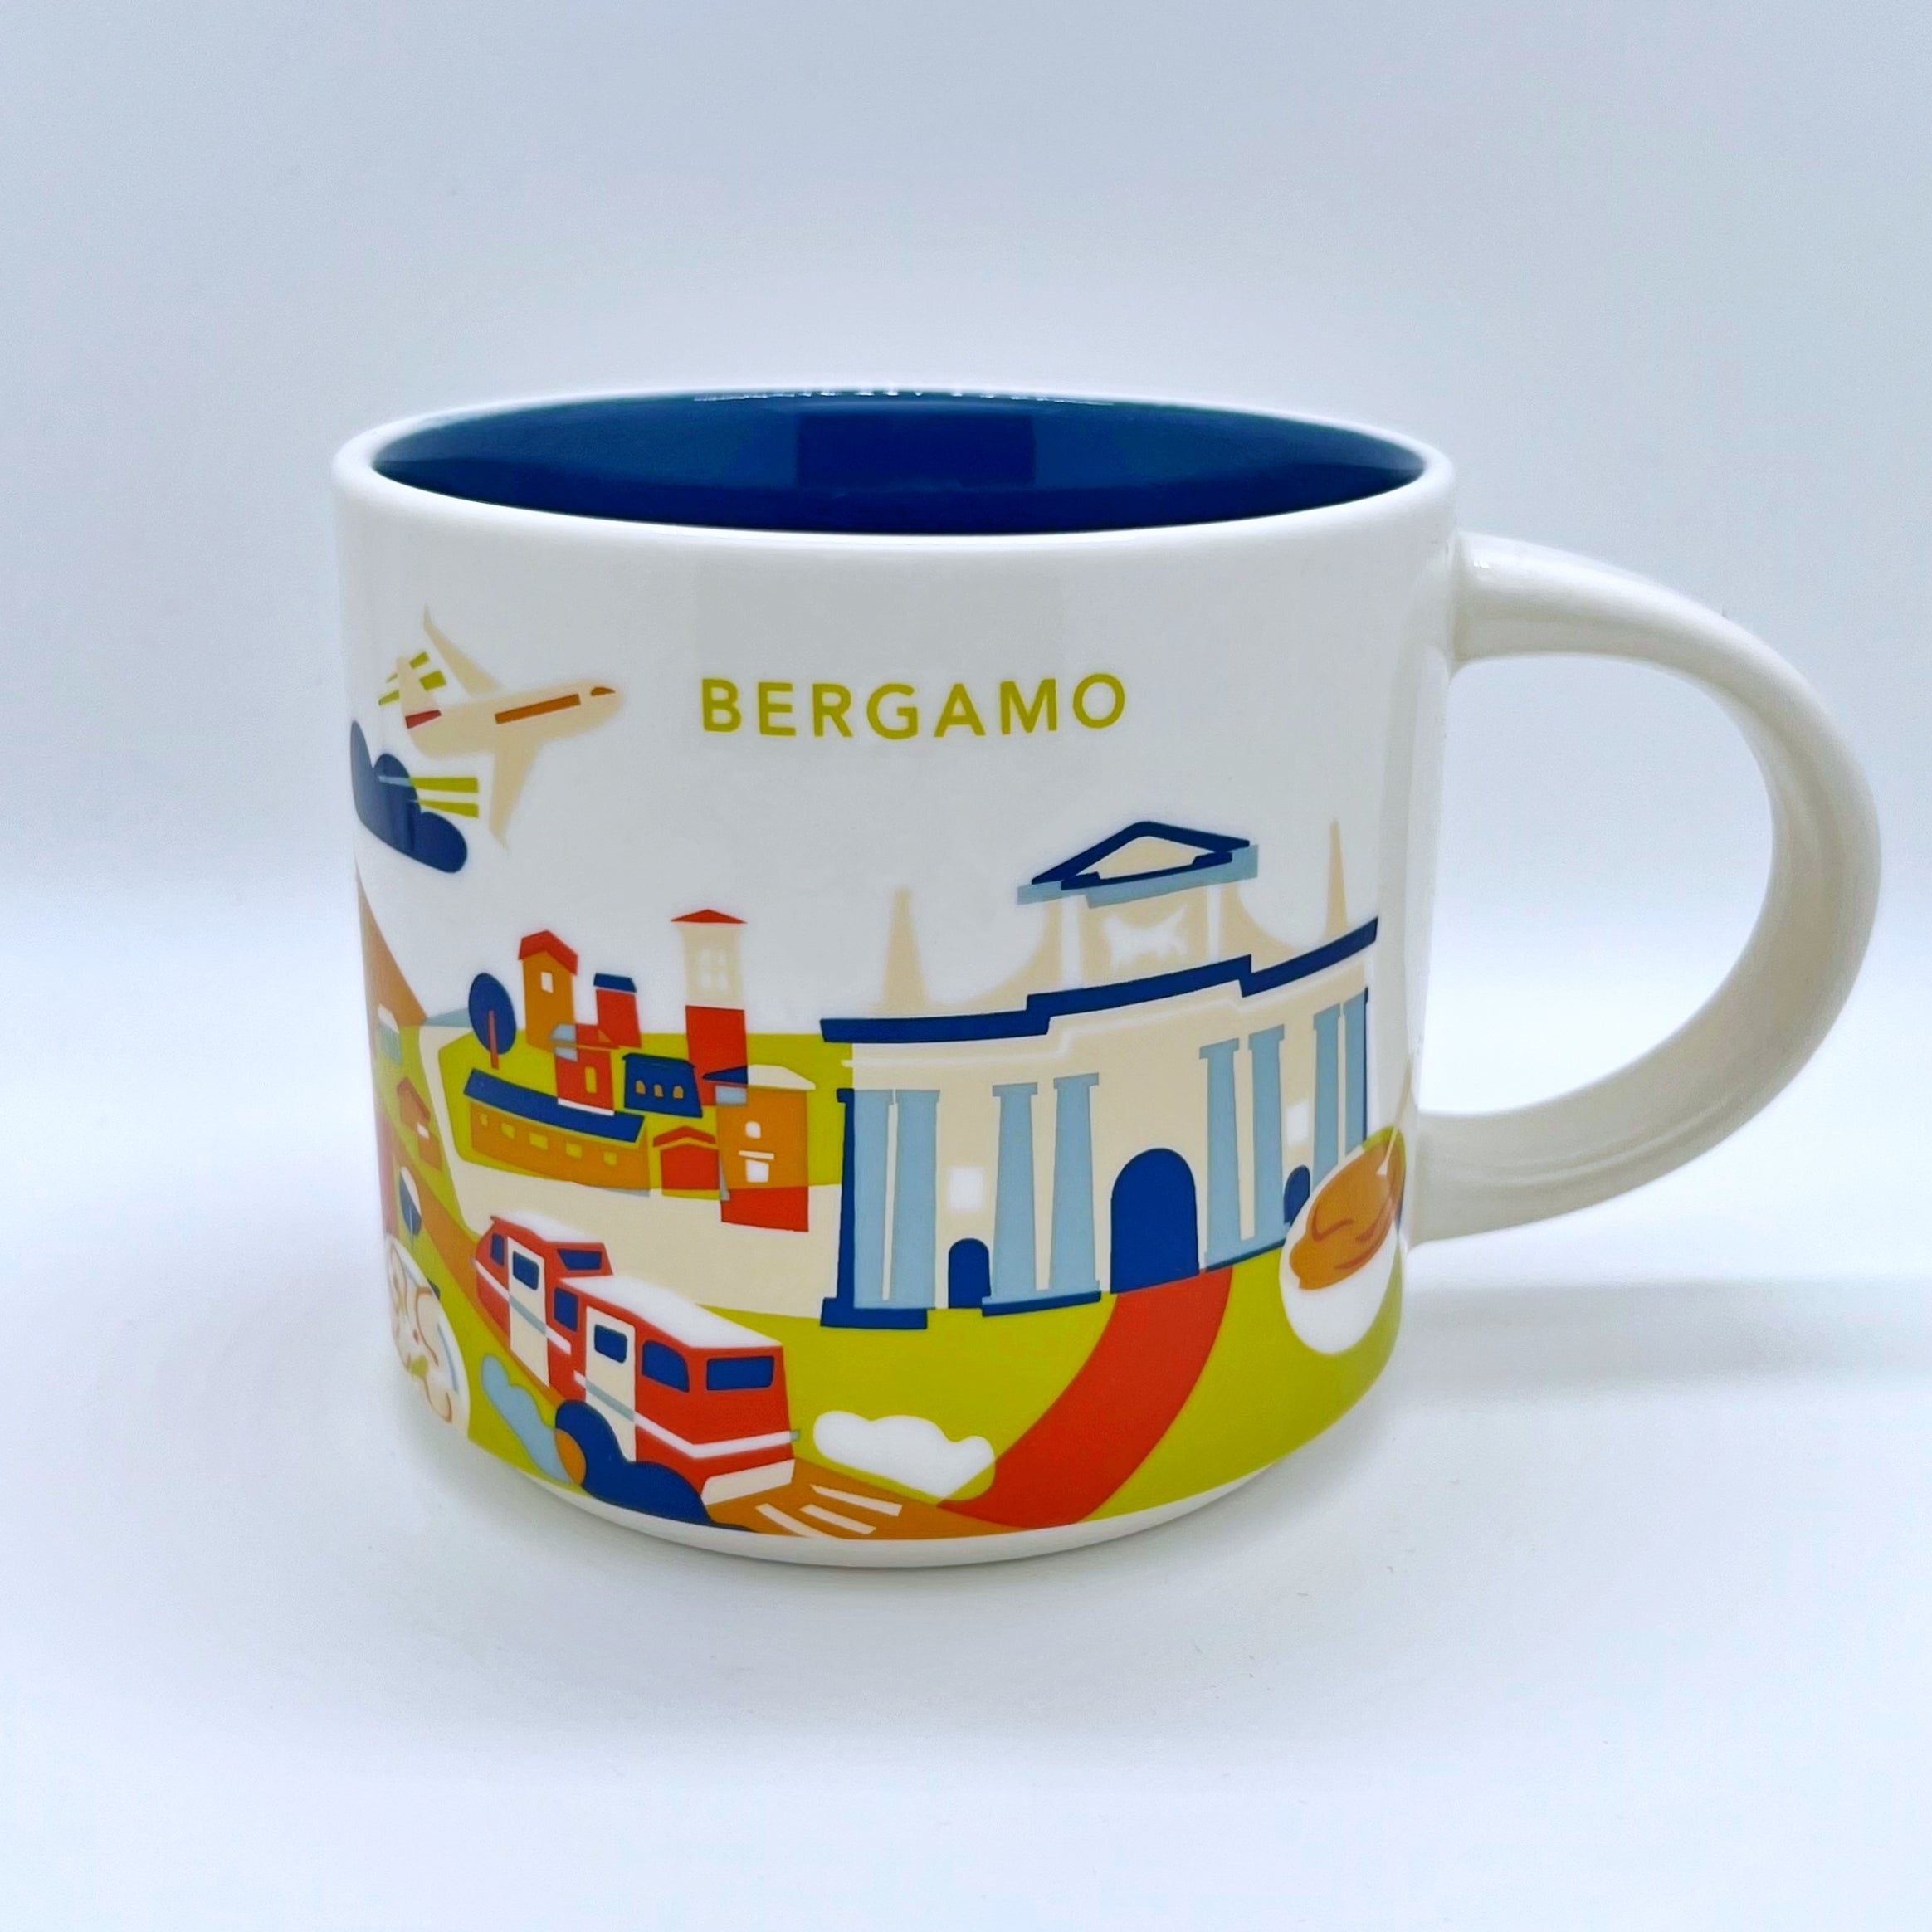 Kaffee Tee und Cappuccino Tasse von Starbucks mit gemalten Bildern aus der Stadt Bergamo